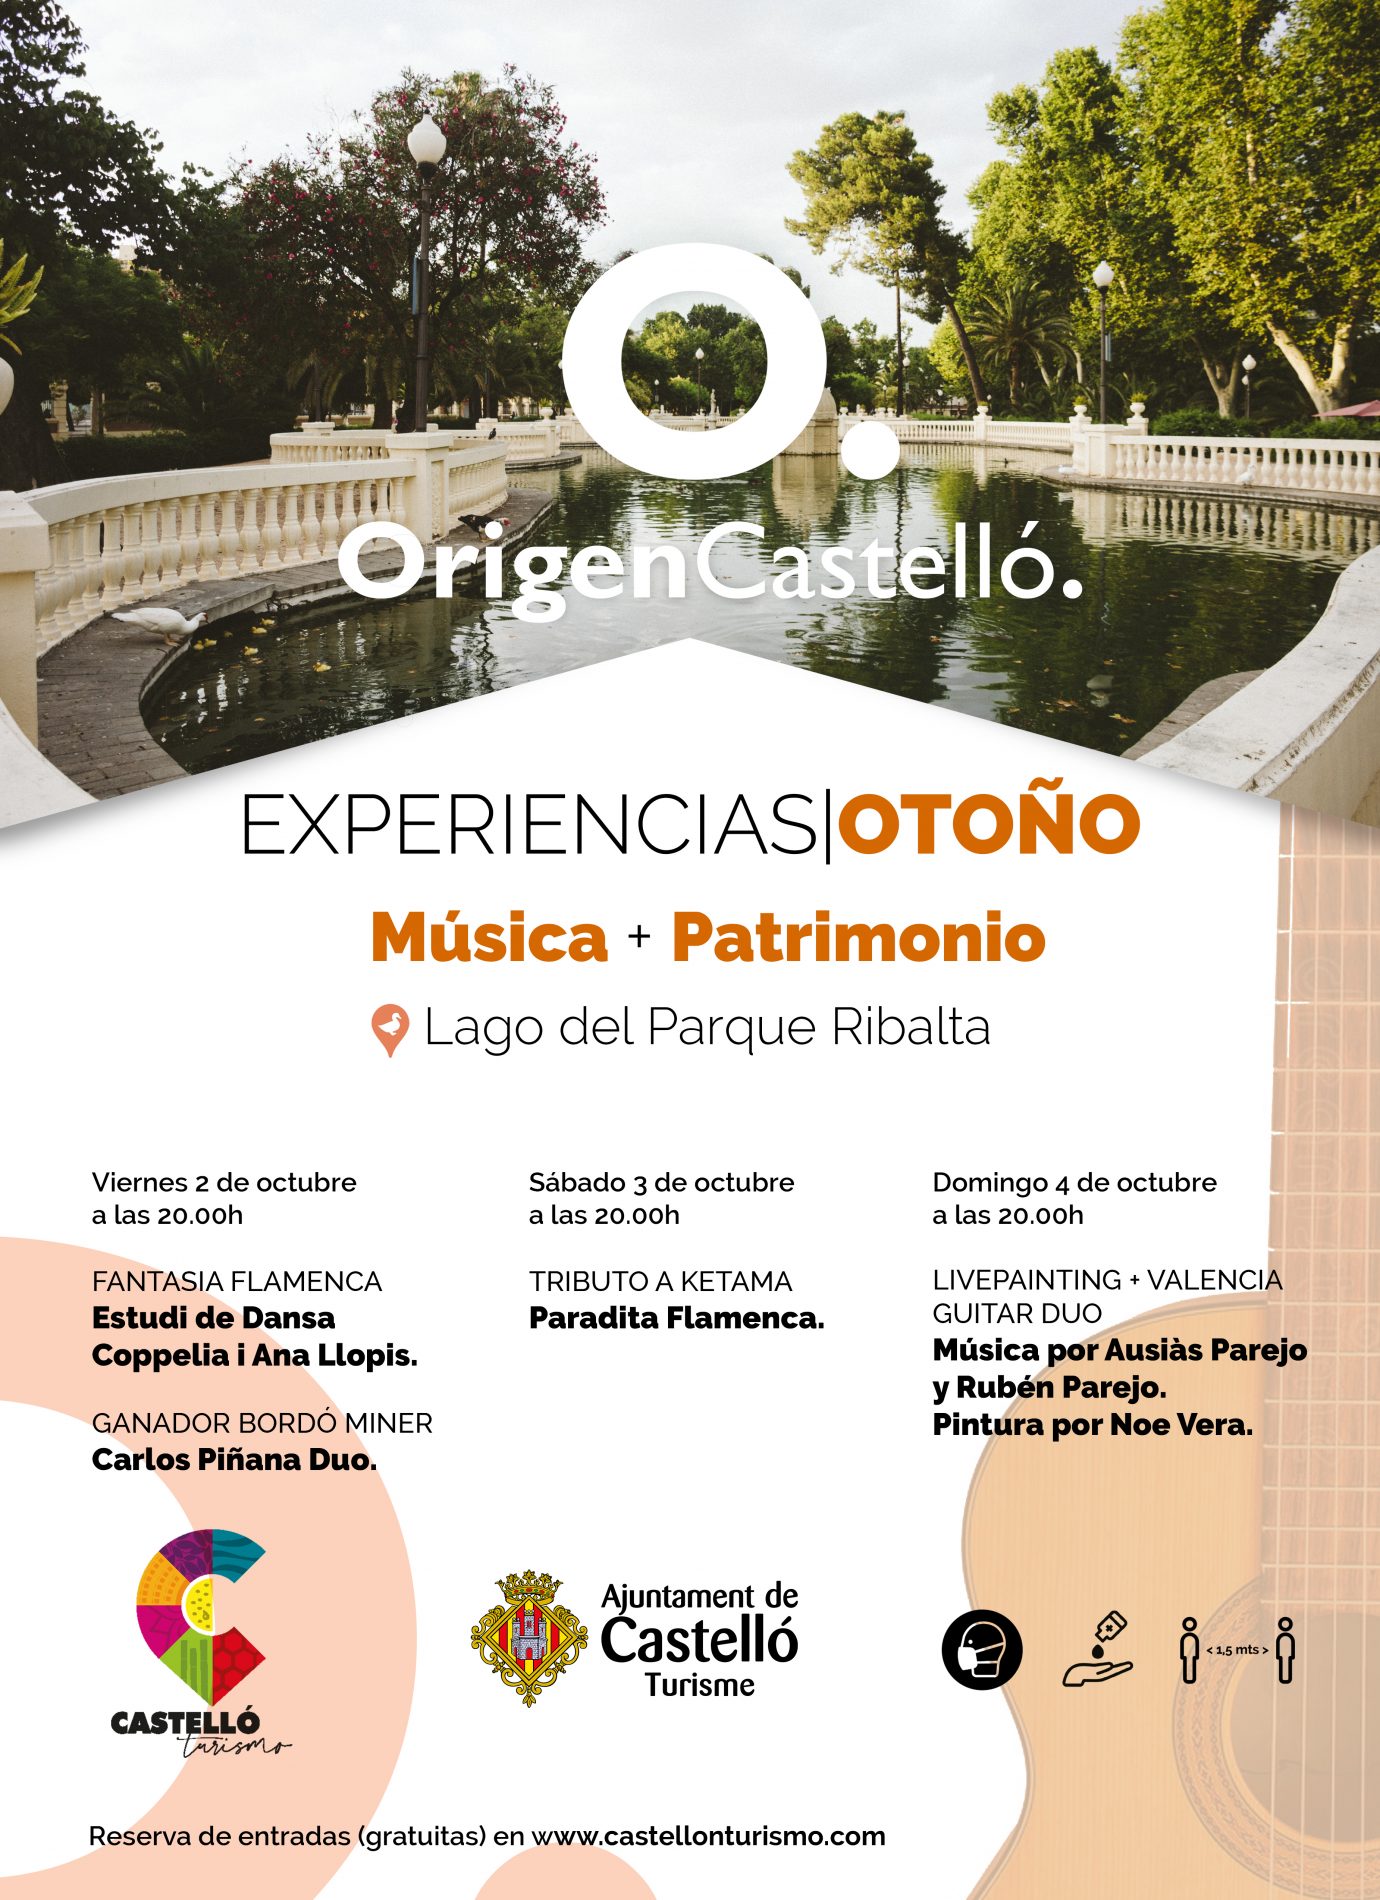 Experiencias Otoño en Castellón: Música y Patrimonio (1)